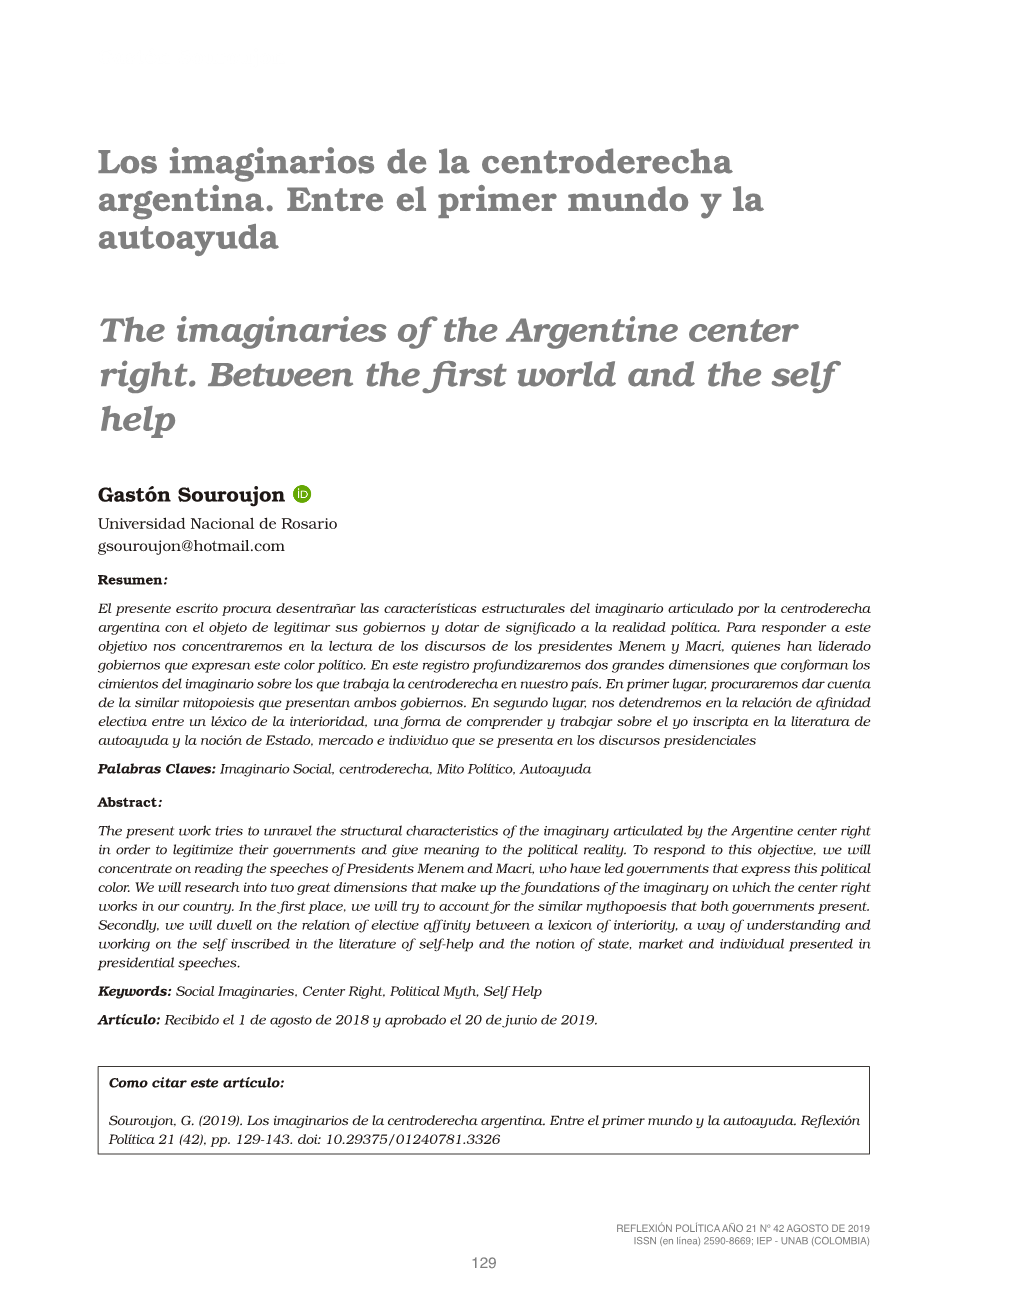 Los Imaginarios De La Centroderecha Argentina. Entre El Primer Mundo Y La Autoayuda